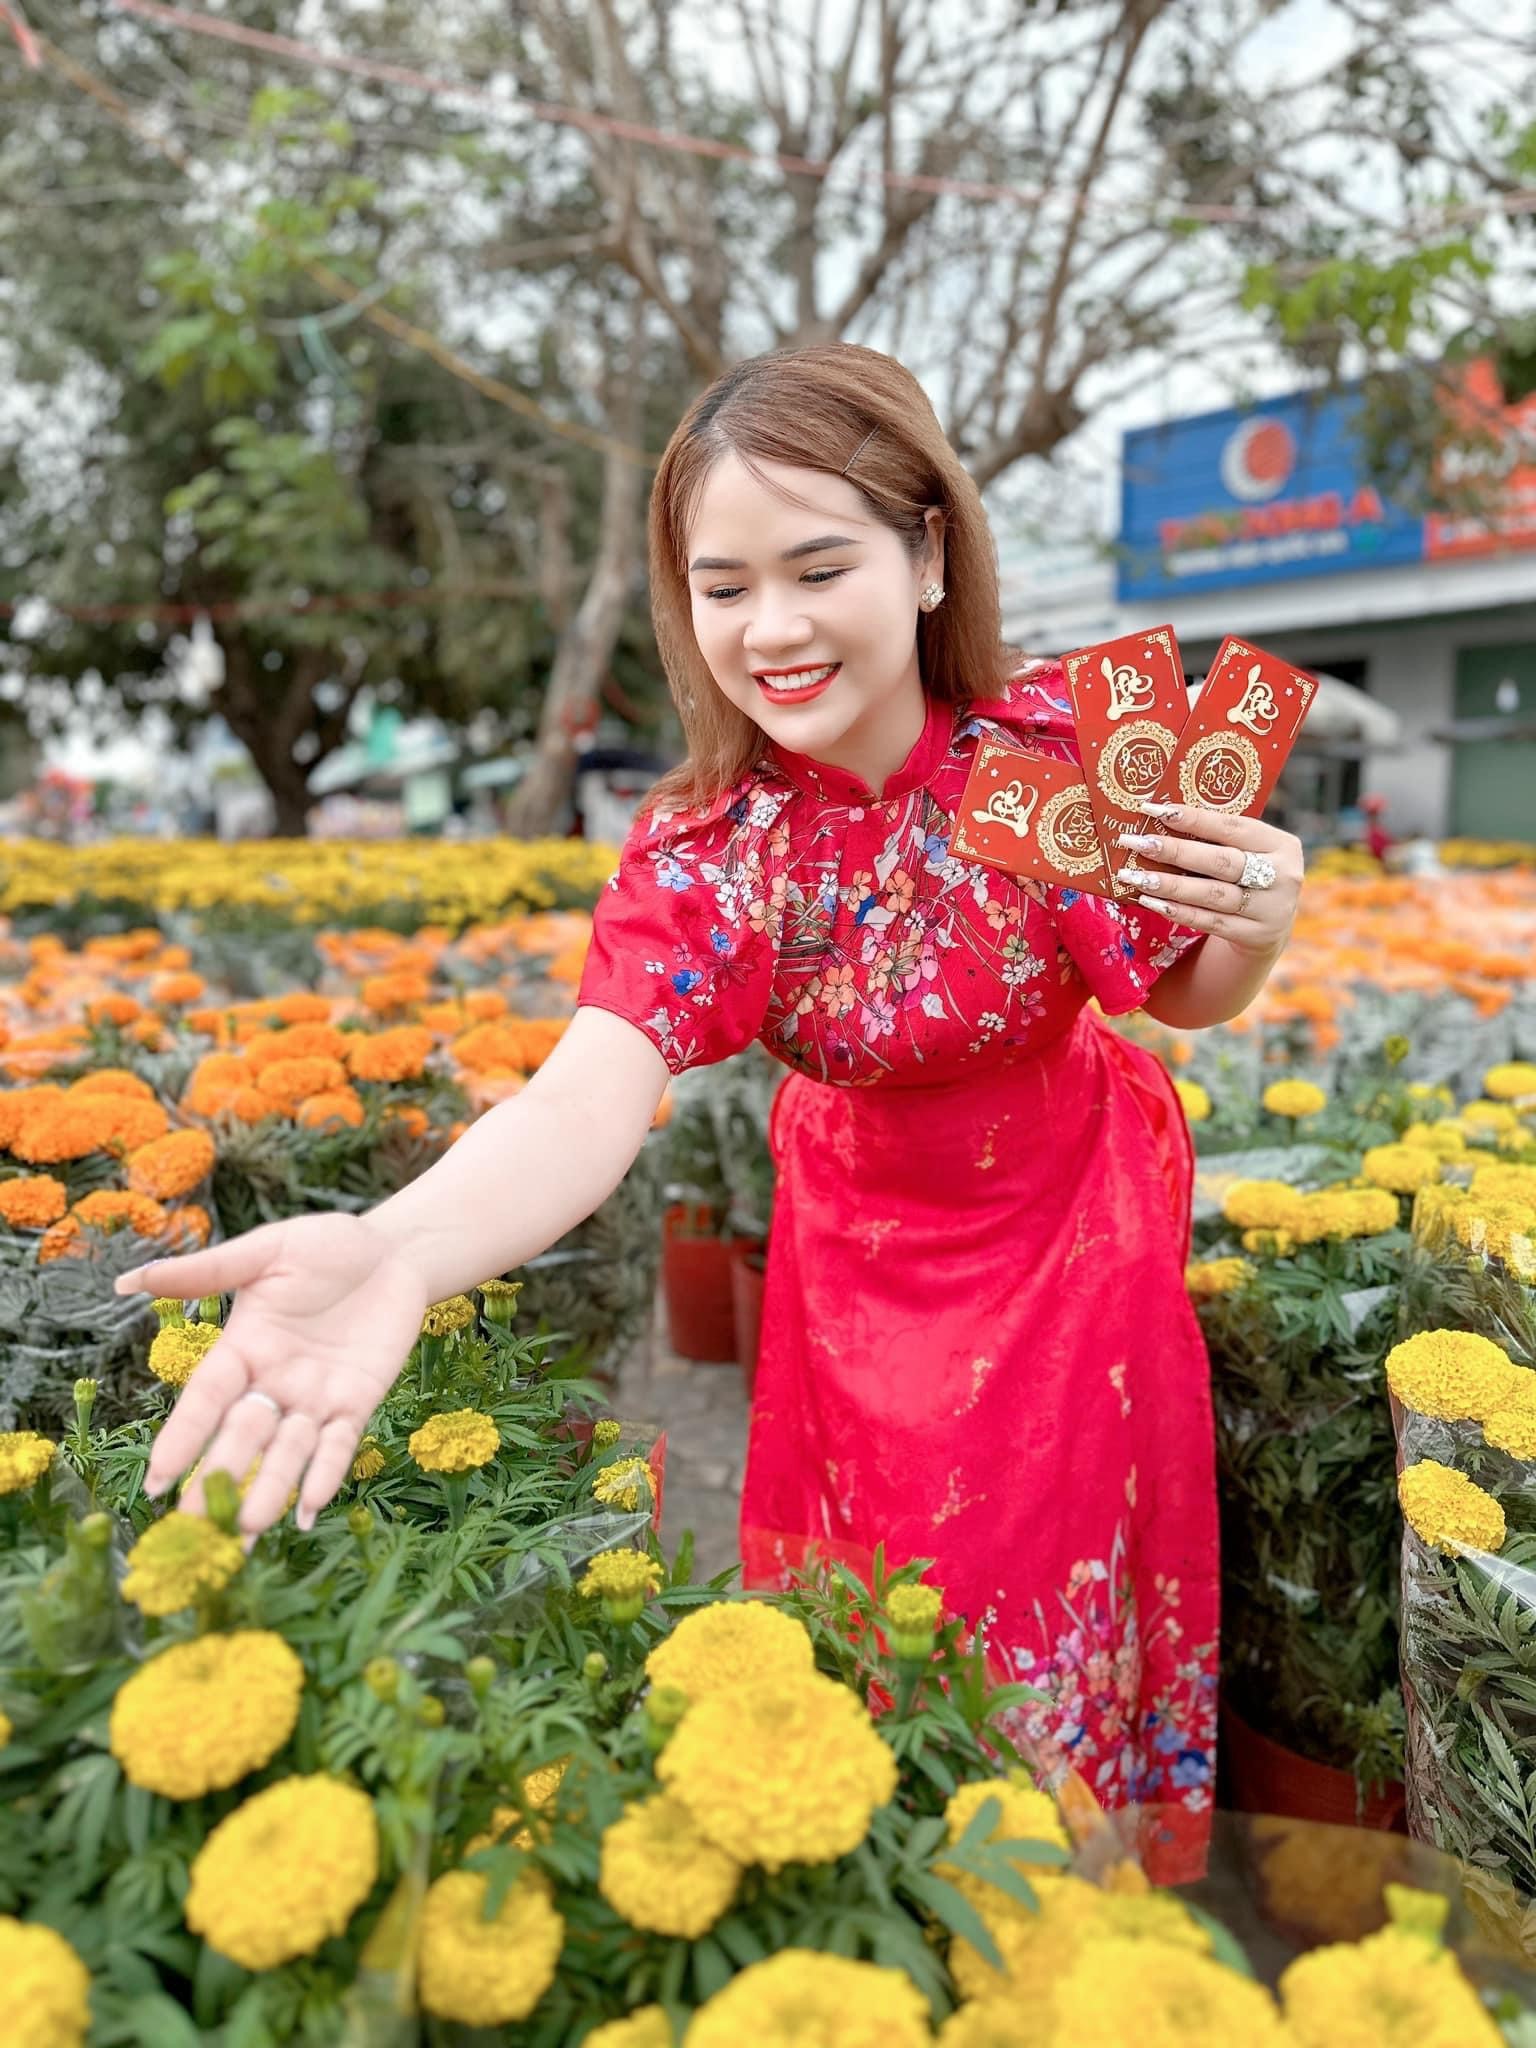 Ca sĩ Nguyễn Kim Cương - Bước khởi đầu gian nan xây dựng thương hiệu Vợ Chồng Song Ca - ảnh 3